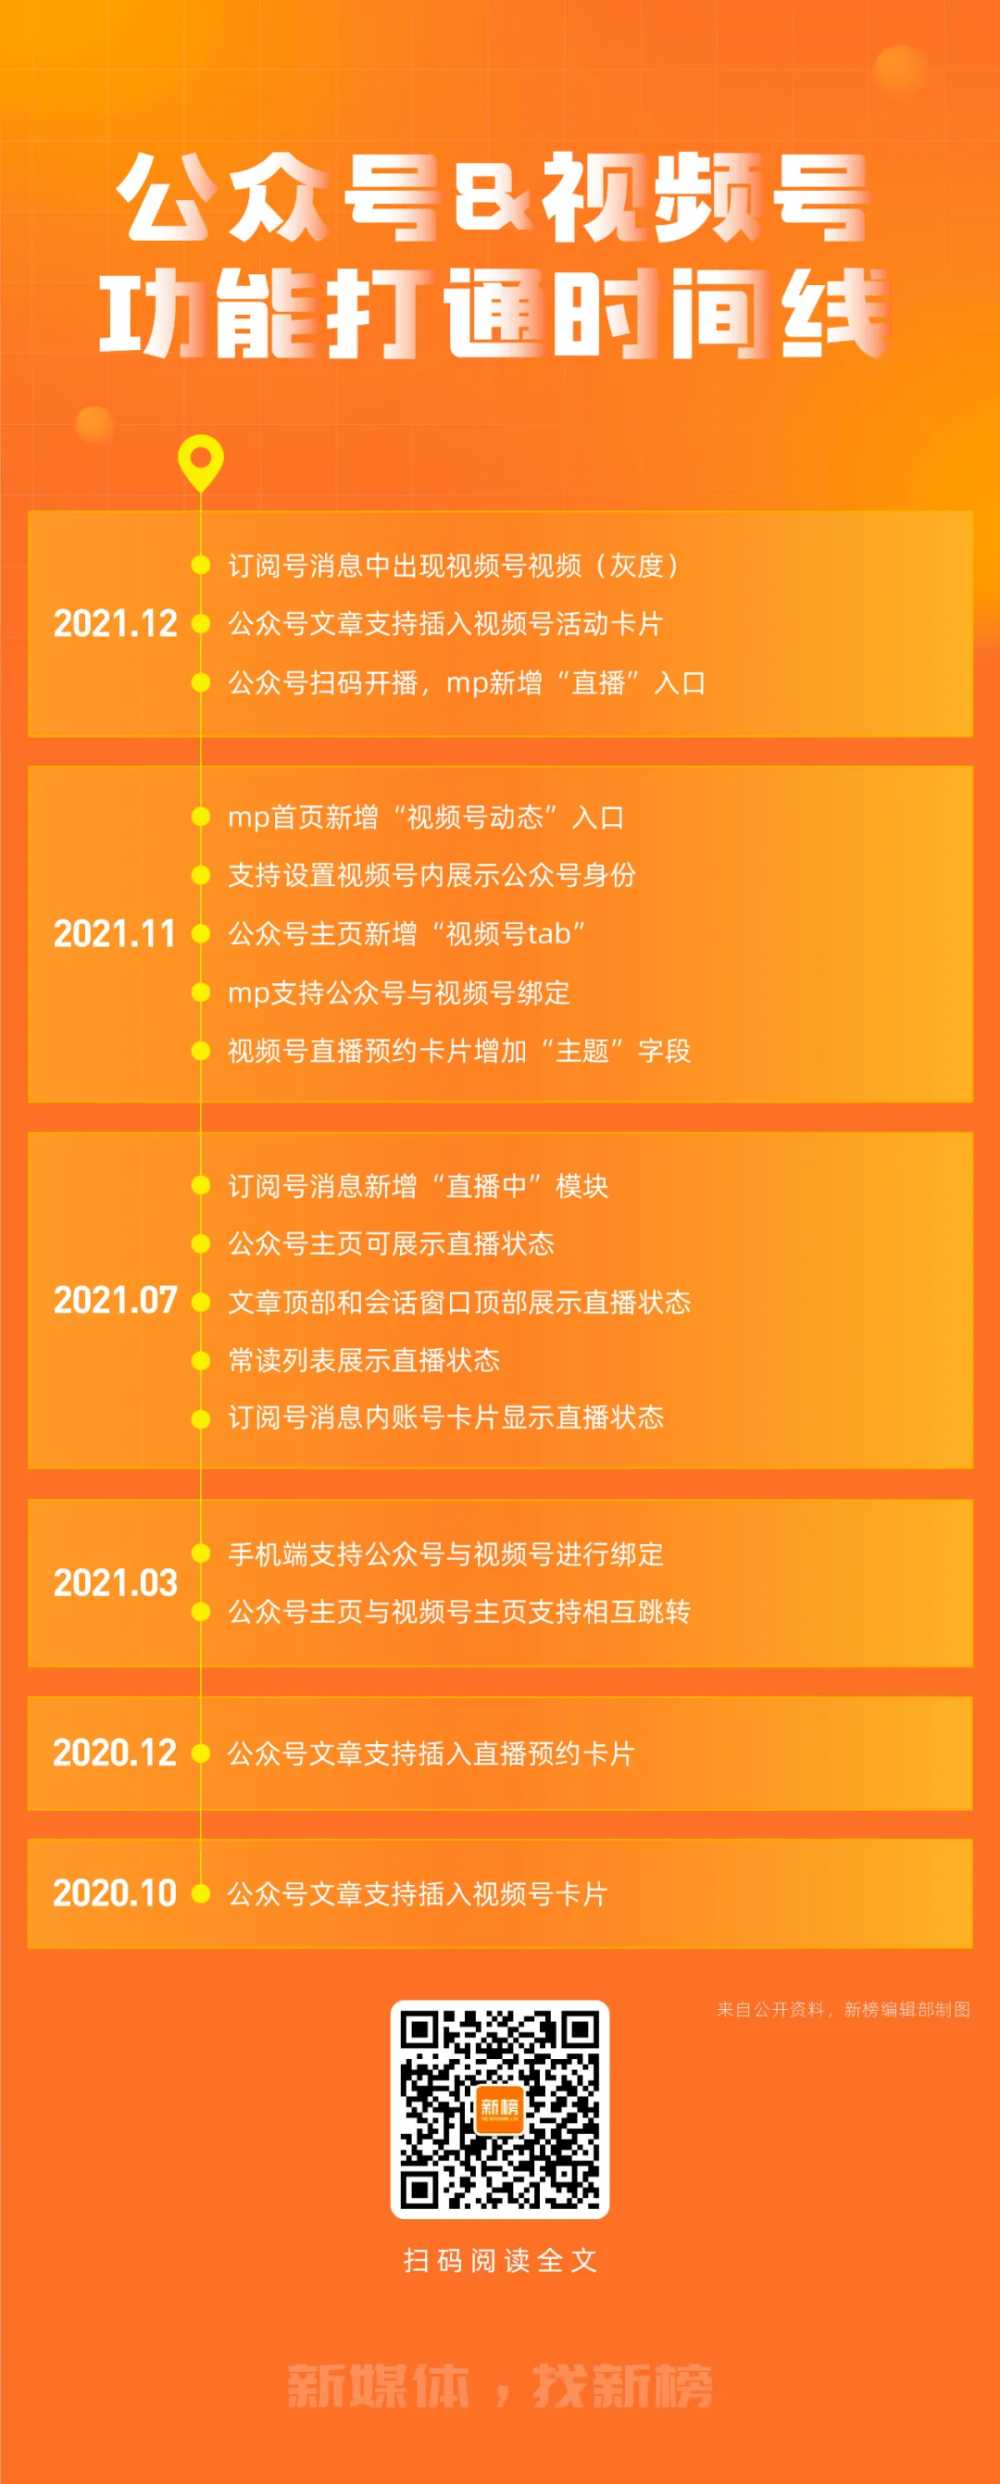 7000字复盘<a href='https://www.zhouxiaohui.cn
' target='_blank'><a href='https://www.zhouxiaohui.cn/duanshipin/
' target='_blank'>视频号</a></a>两周年：出圈的爆款，复兴的微信内容生态-第11张图片-周小辉博客